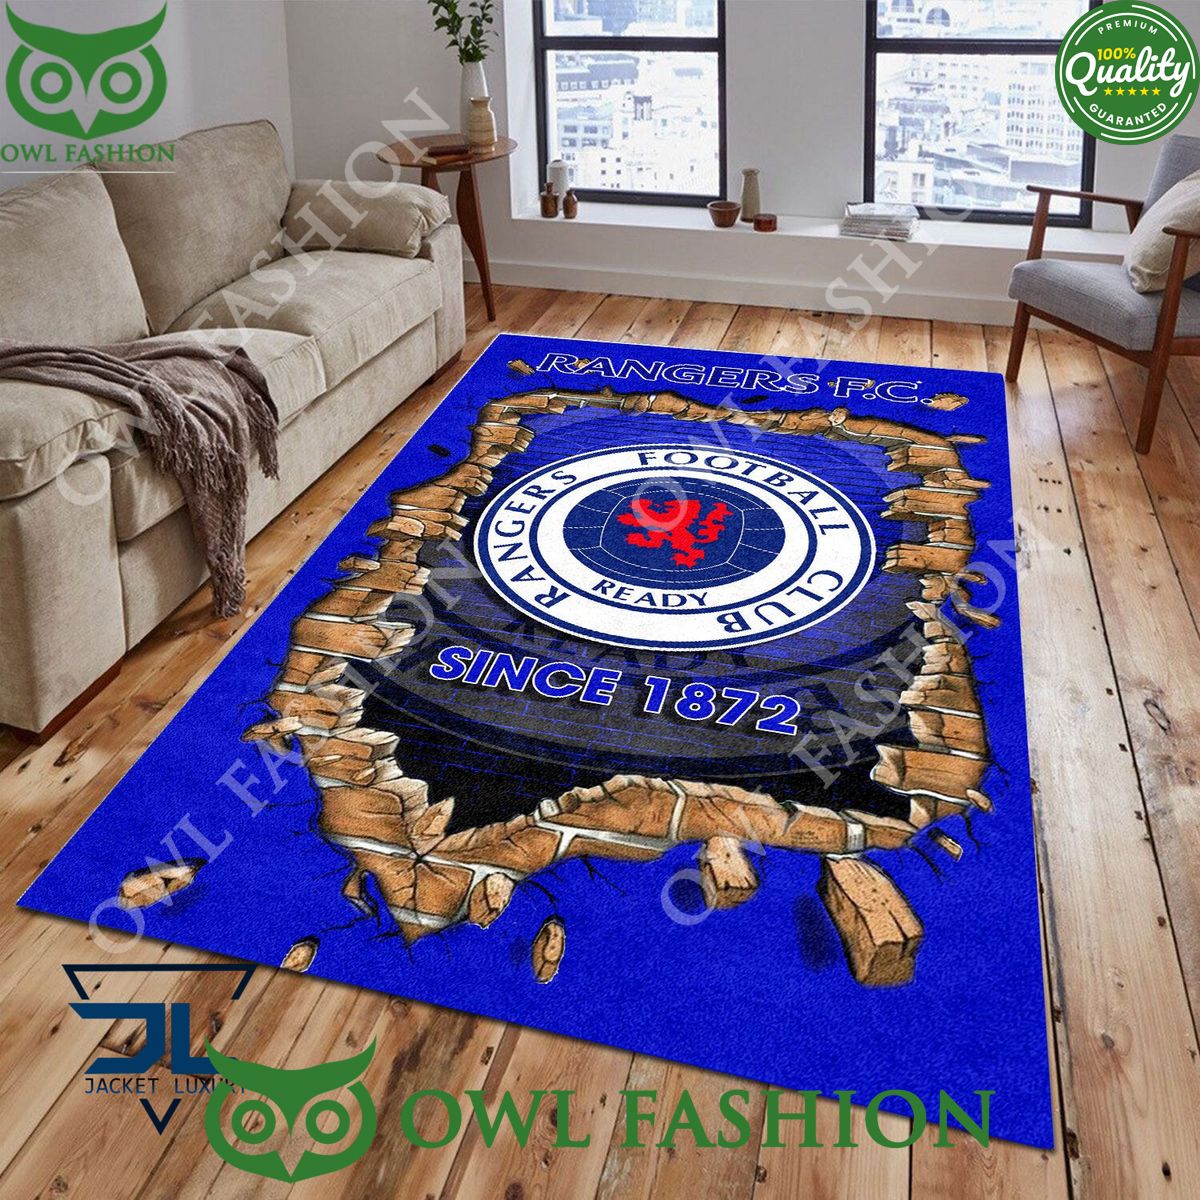 Rangers F.C. 1788 Scottish Broken Wall Living Room Carpet